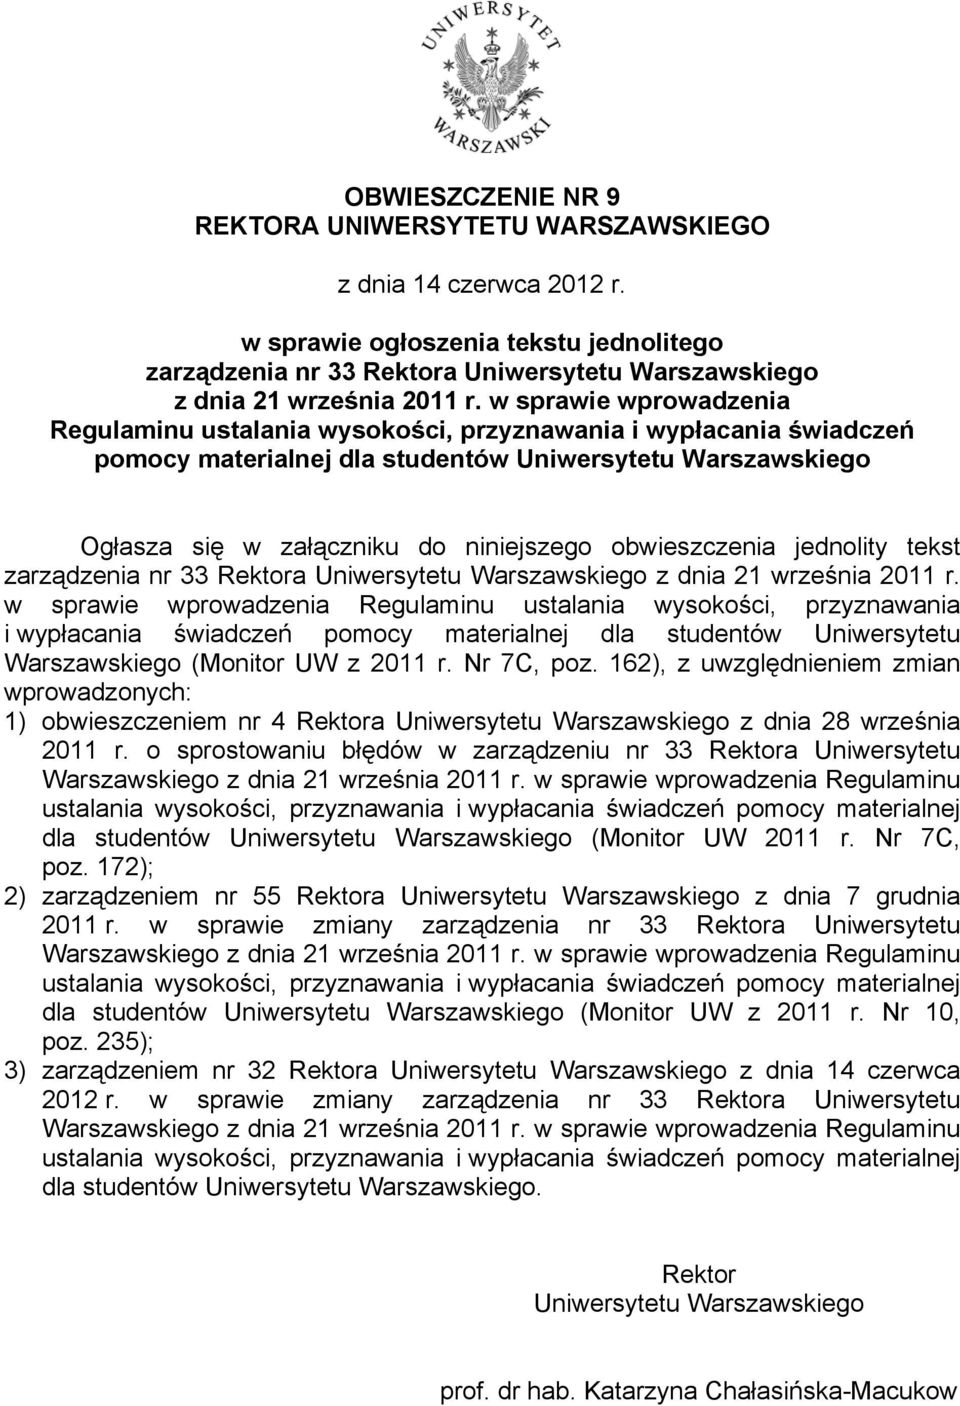 obwieszczenia jednolity tekst zarządzenia nr 33 Rektora Uniwersytetu Warszawskiego z dnia 21 września 2011 r.